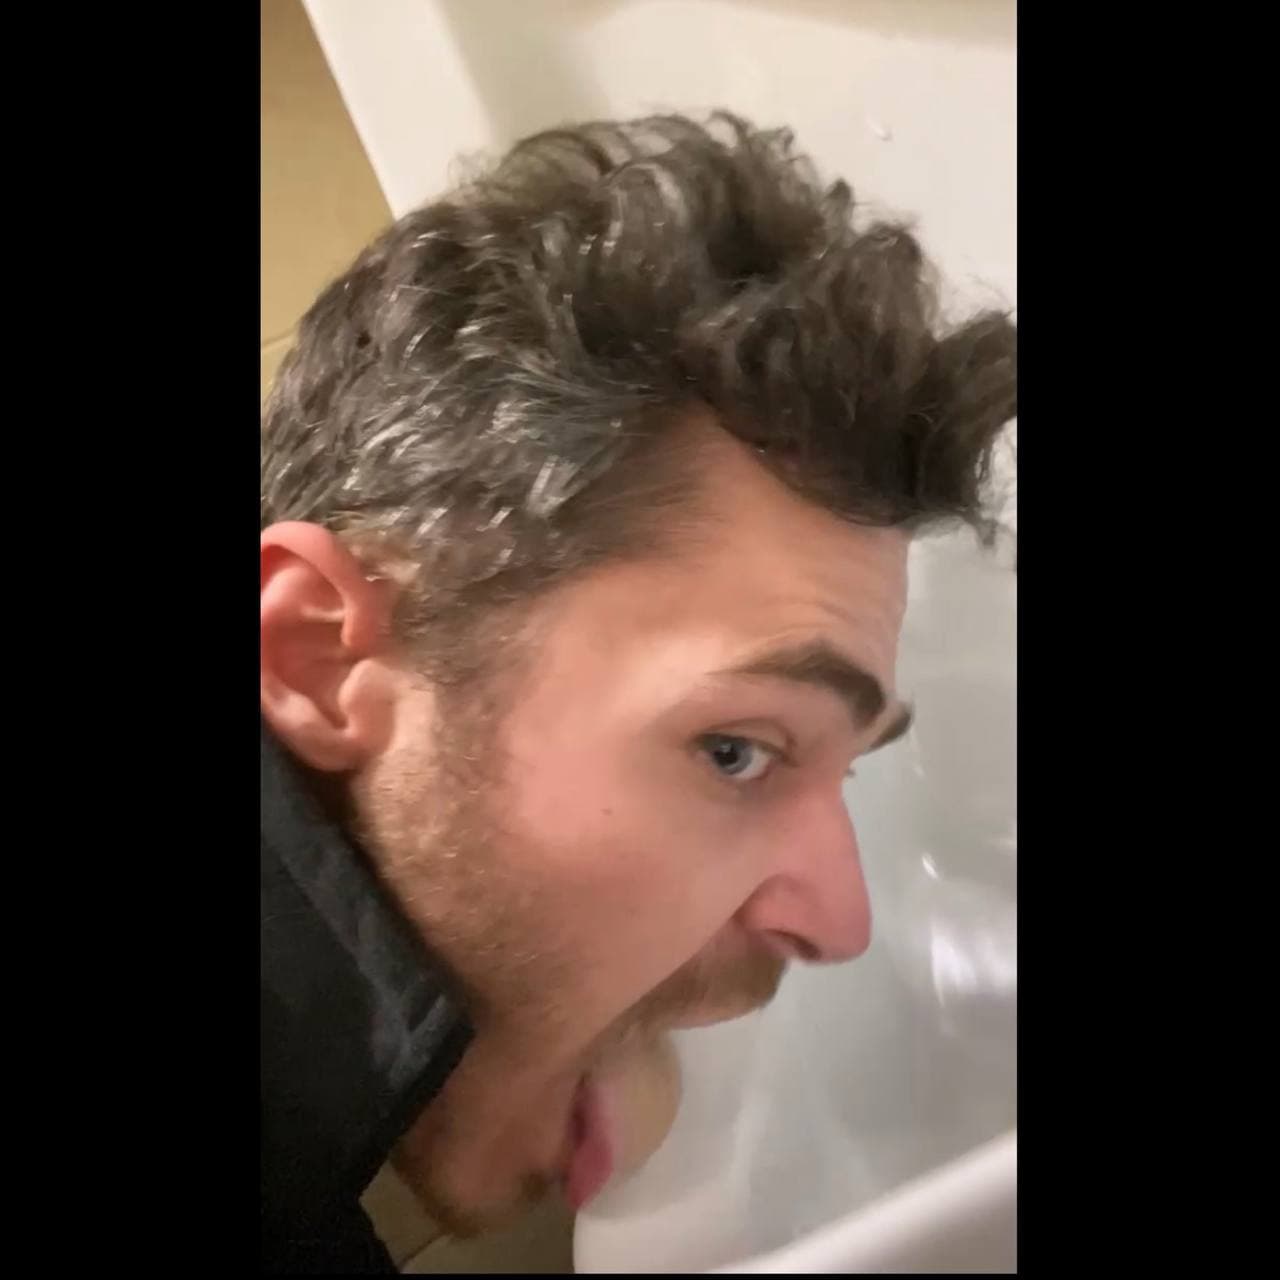 Urinal licking faggot